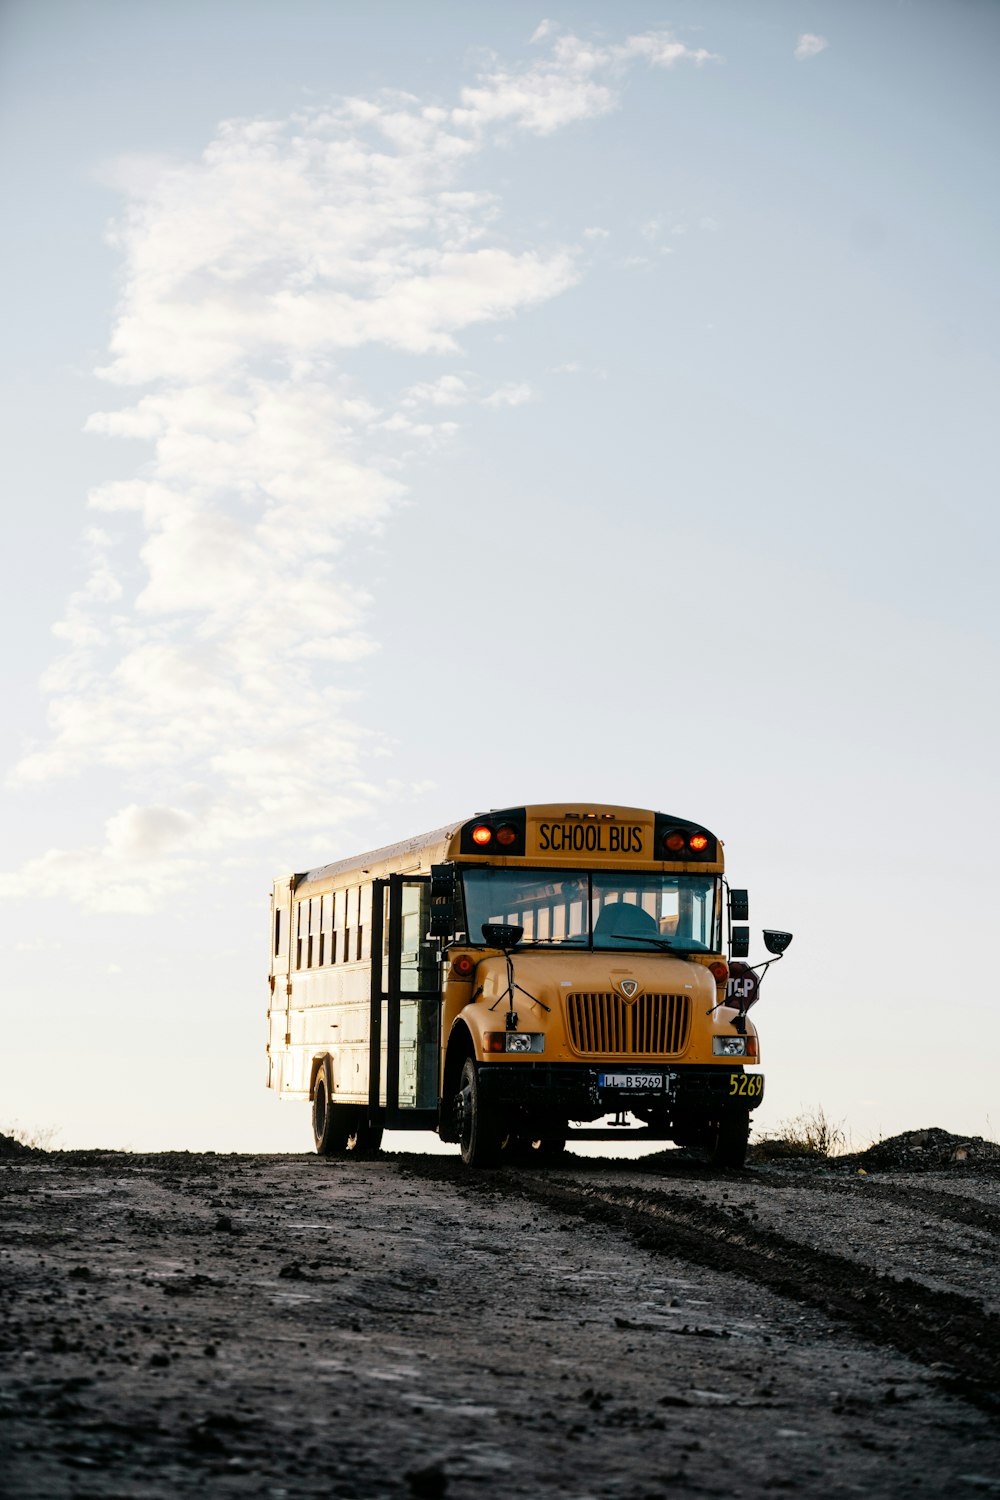 日中の白い曇り空の下、雪に覆われた地面を走る黄色いスクールバス